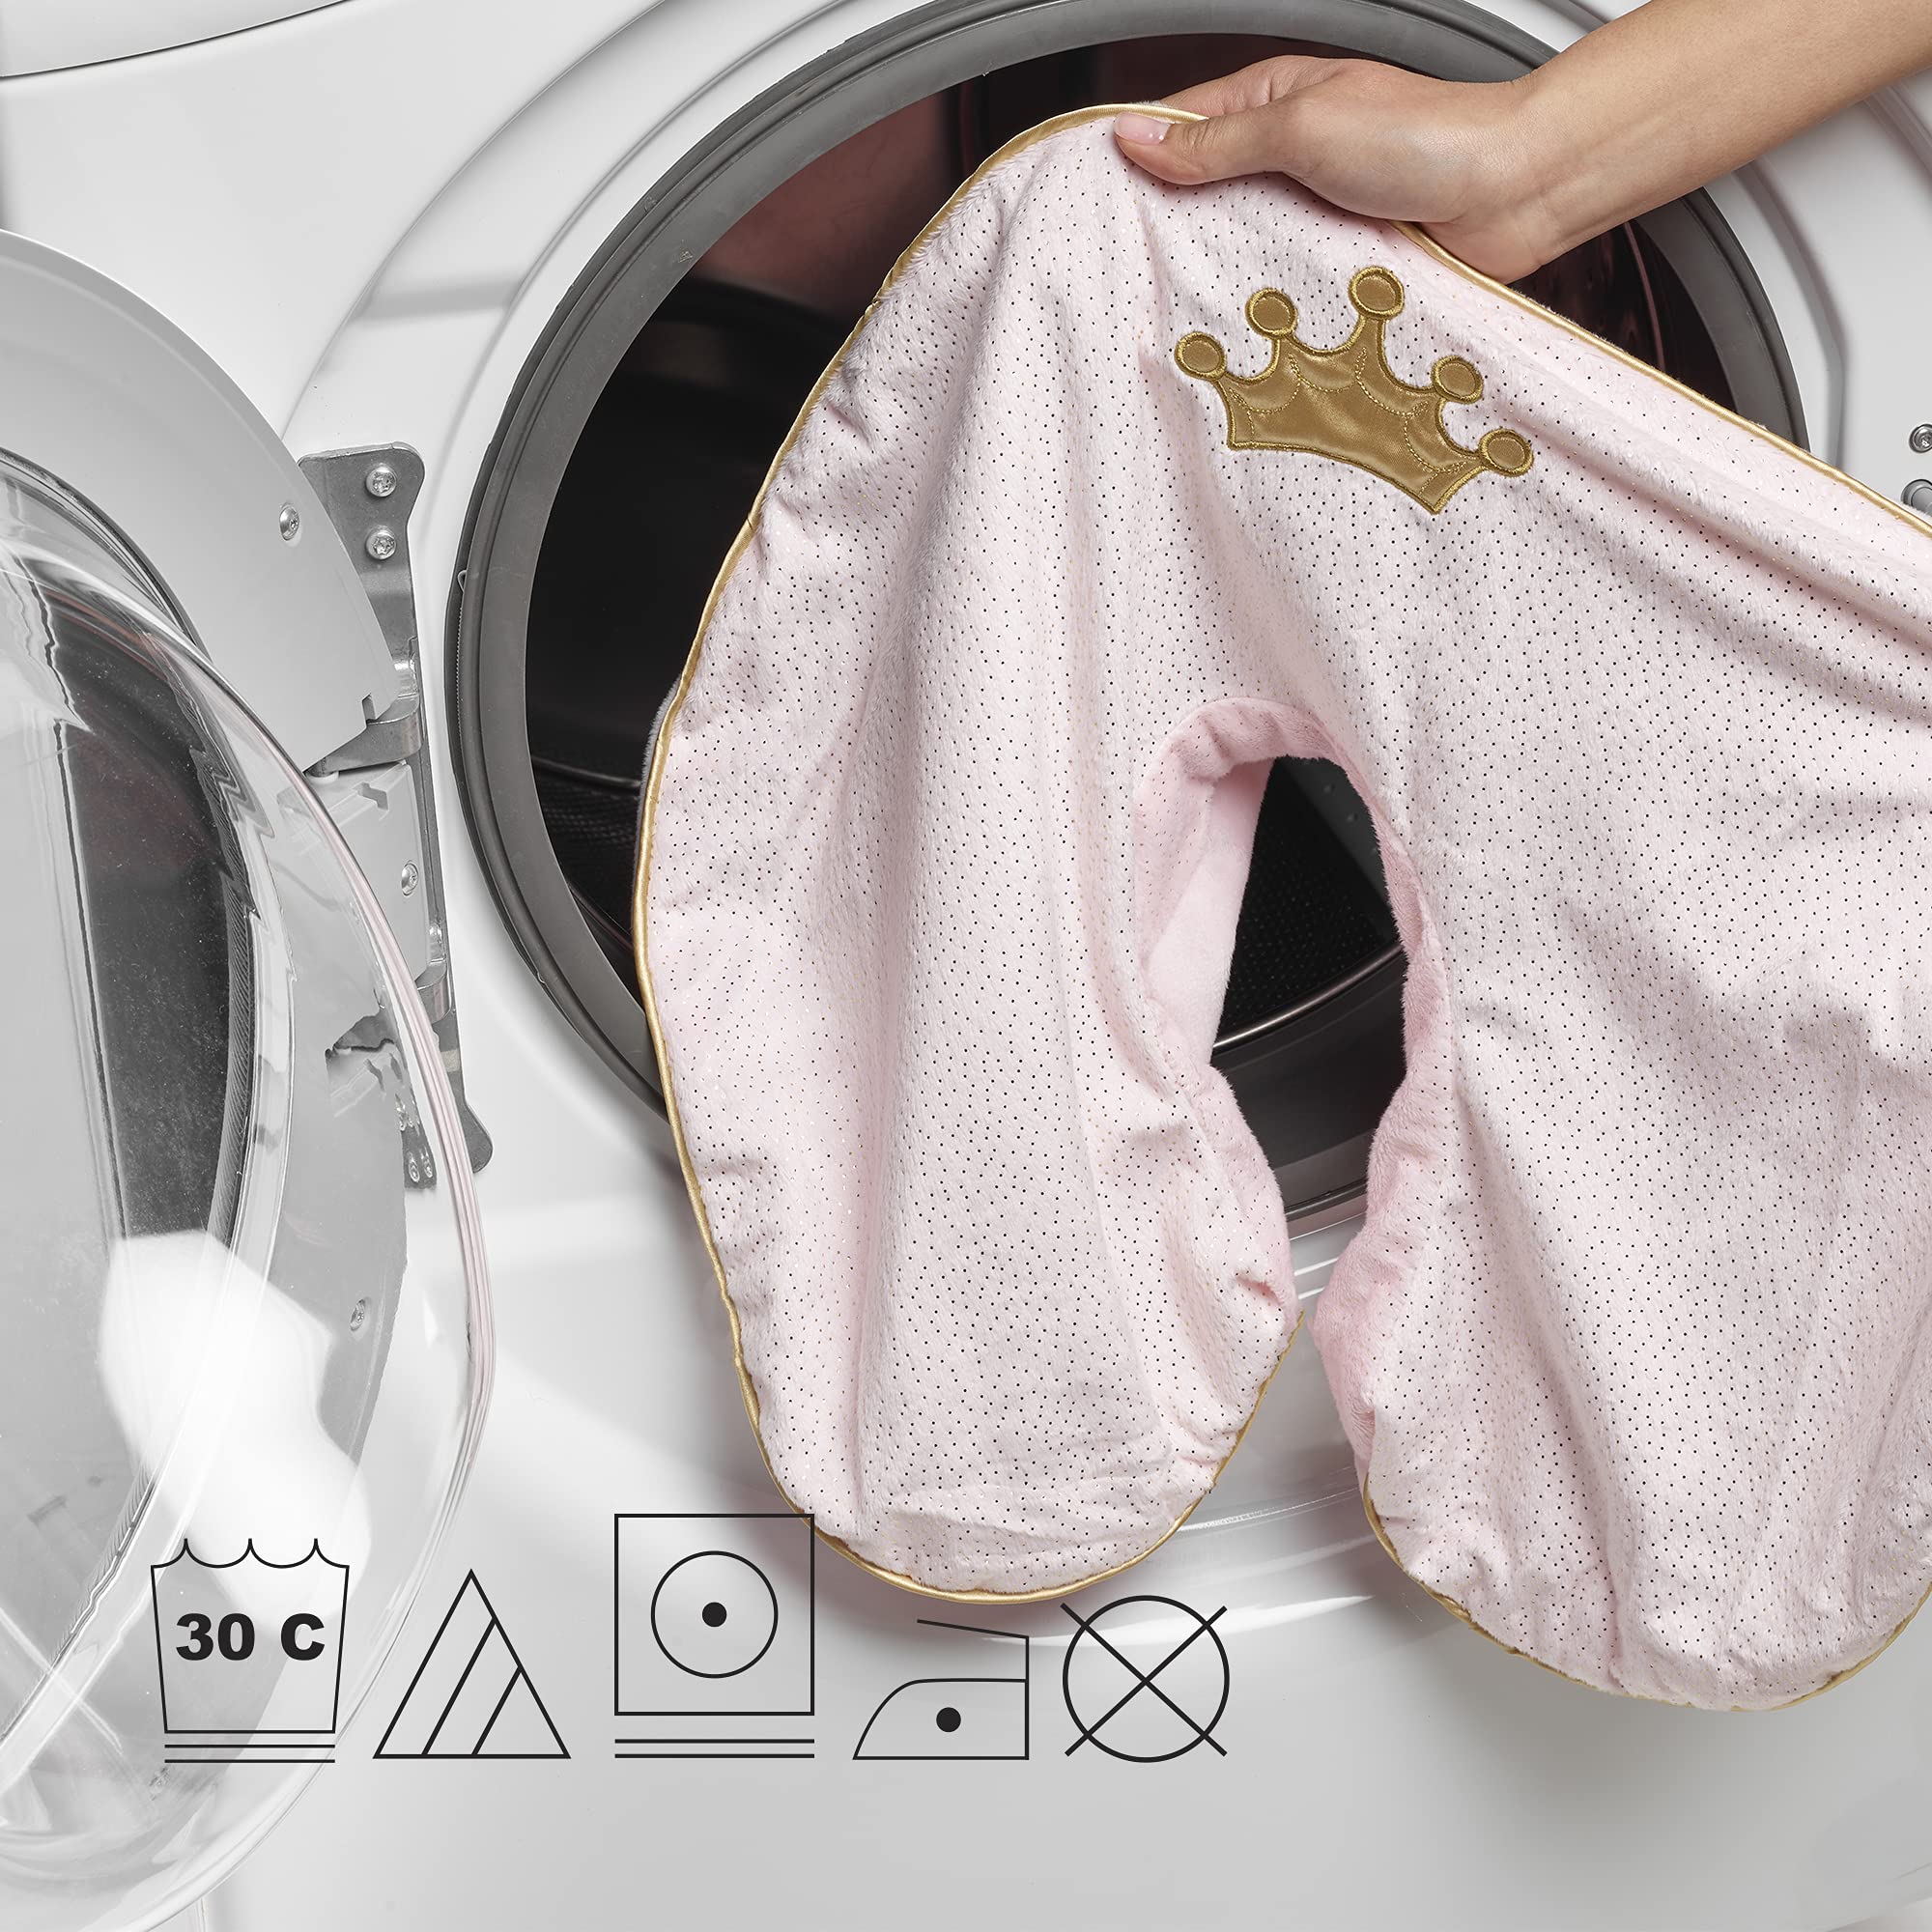 How To Wash Underwear In The Washing Machine